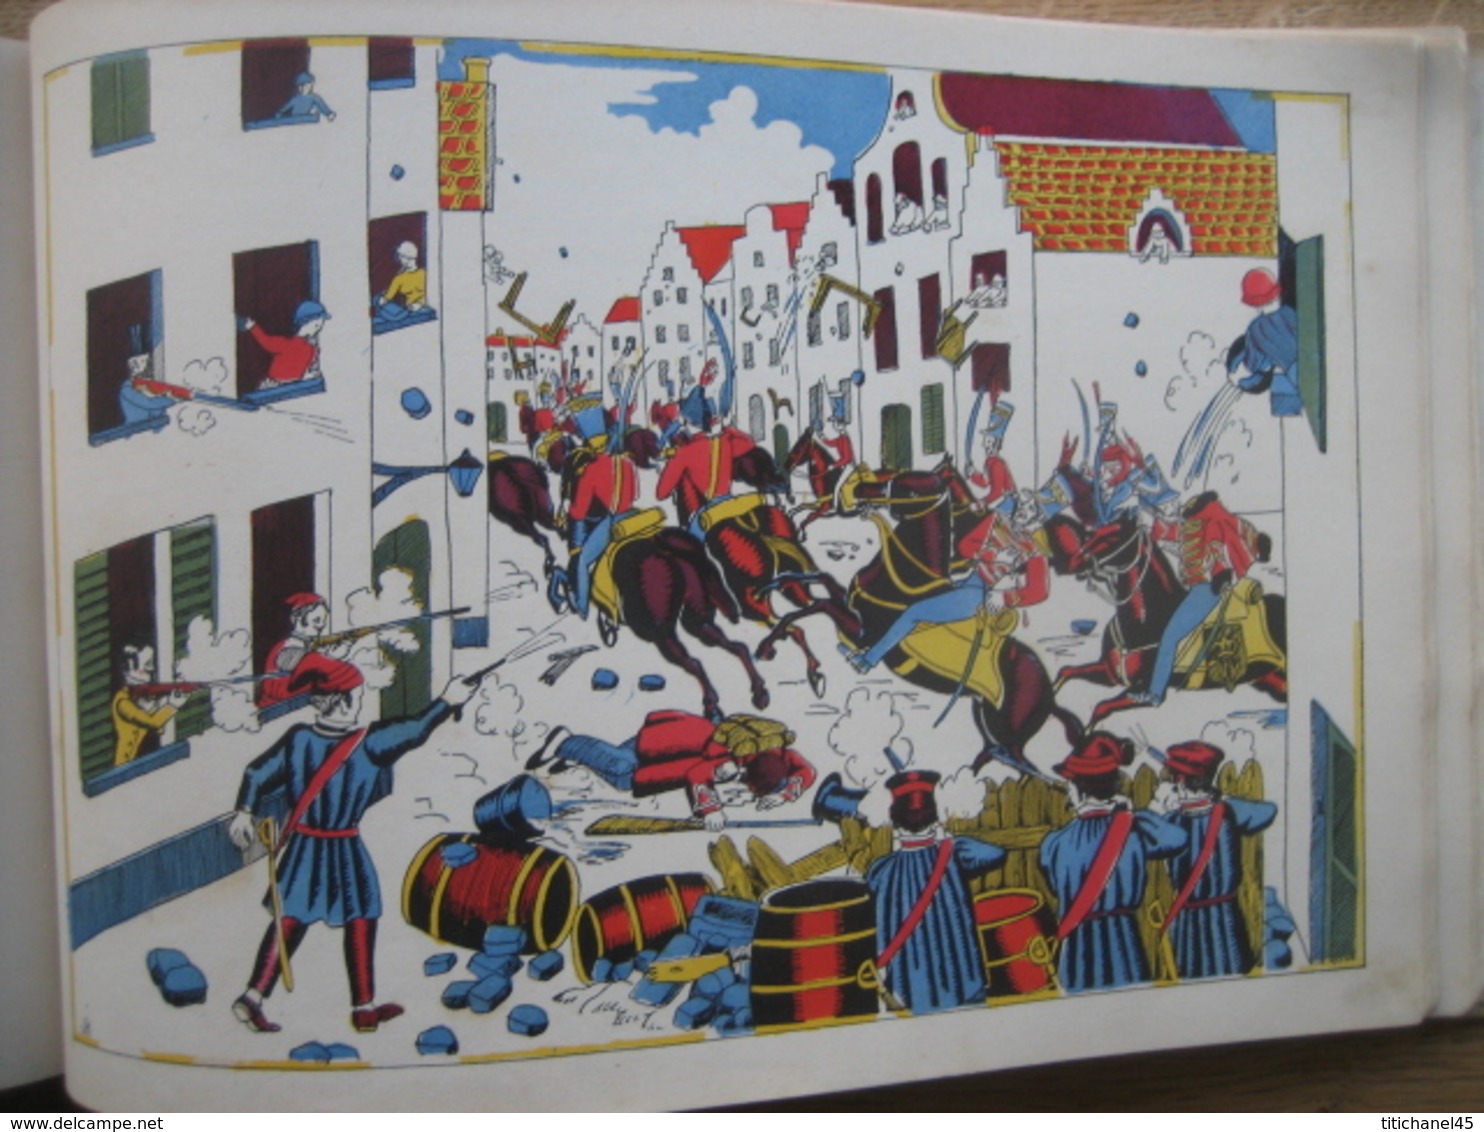 HISTOIRE DE BELGIQUE - Texte de Jeanne CAPPE - Ed. des Artistes 1939 - Illustré par Jeanne KERREMANS